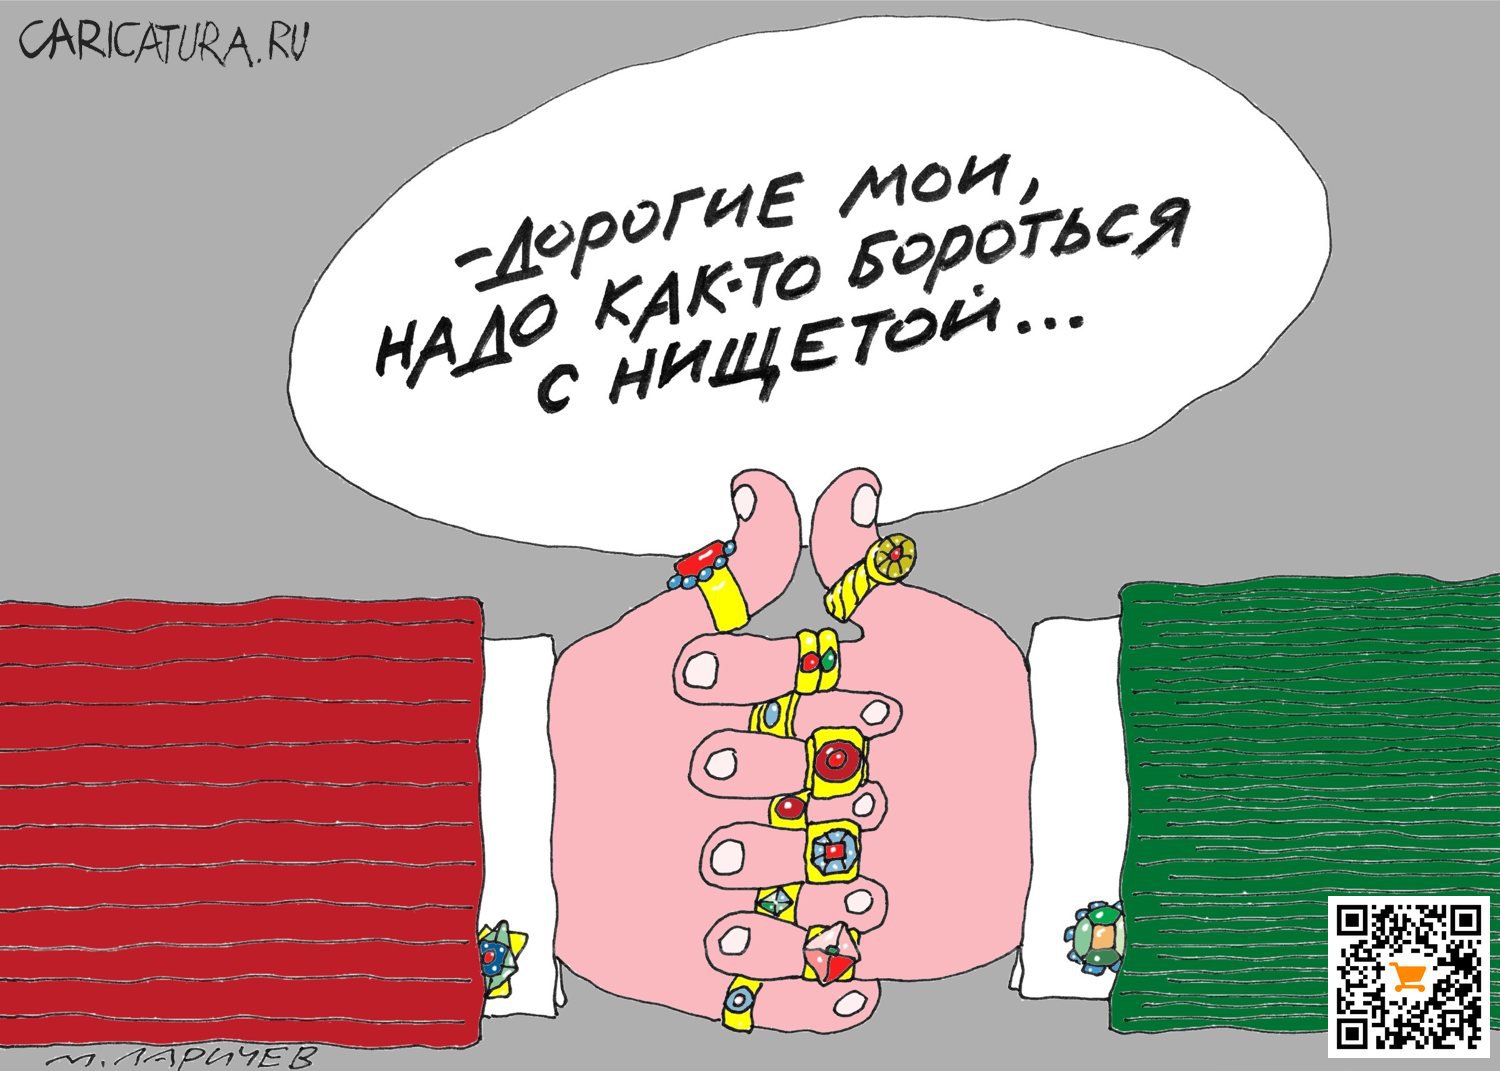 Карикатура "Борьба", Михаил Ларичев